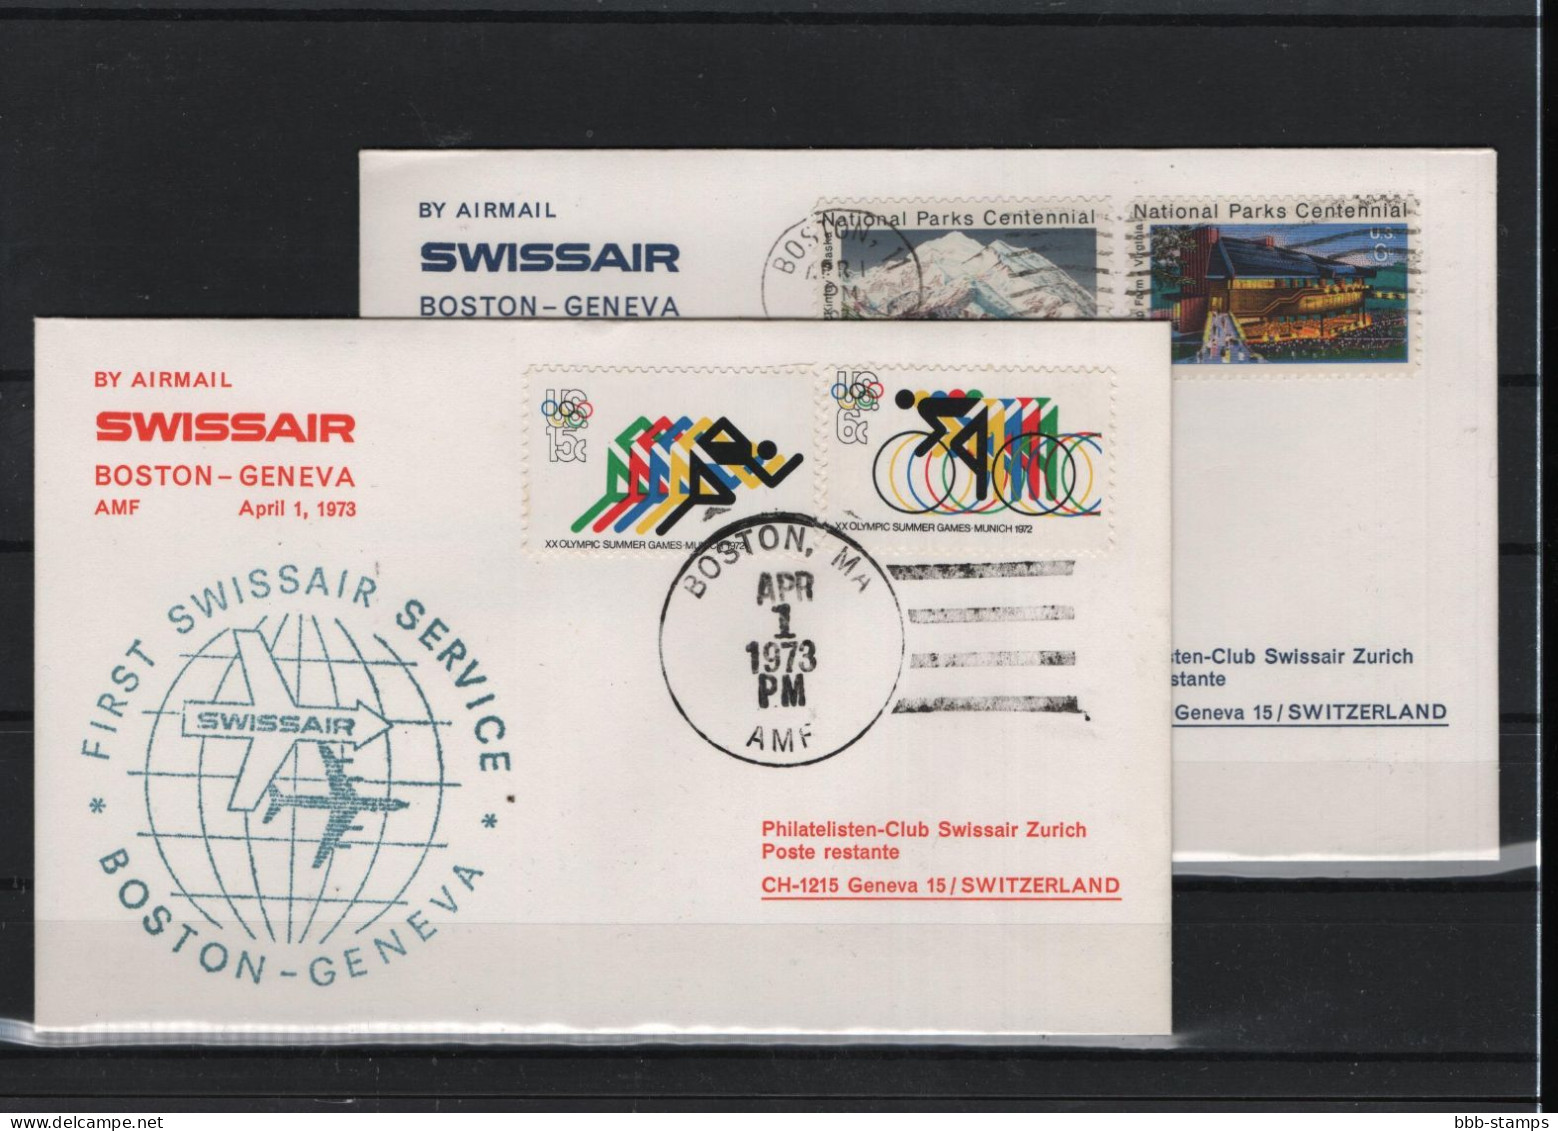 Schweiz Luftpost FFC Swissair  4.4.1973 Genf - Boston - First Flight Covers